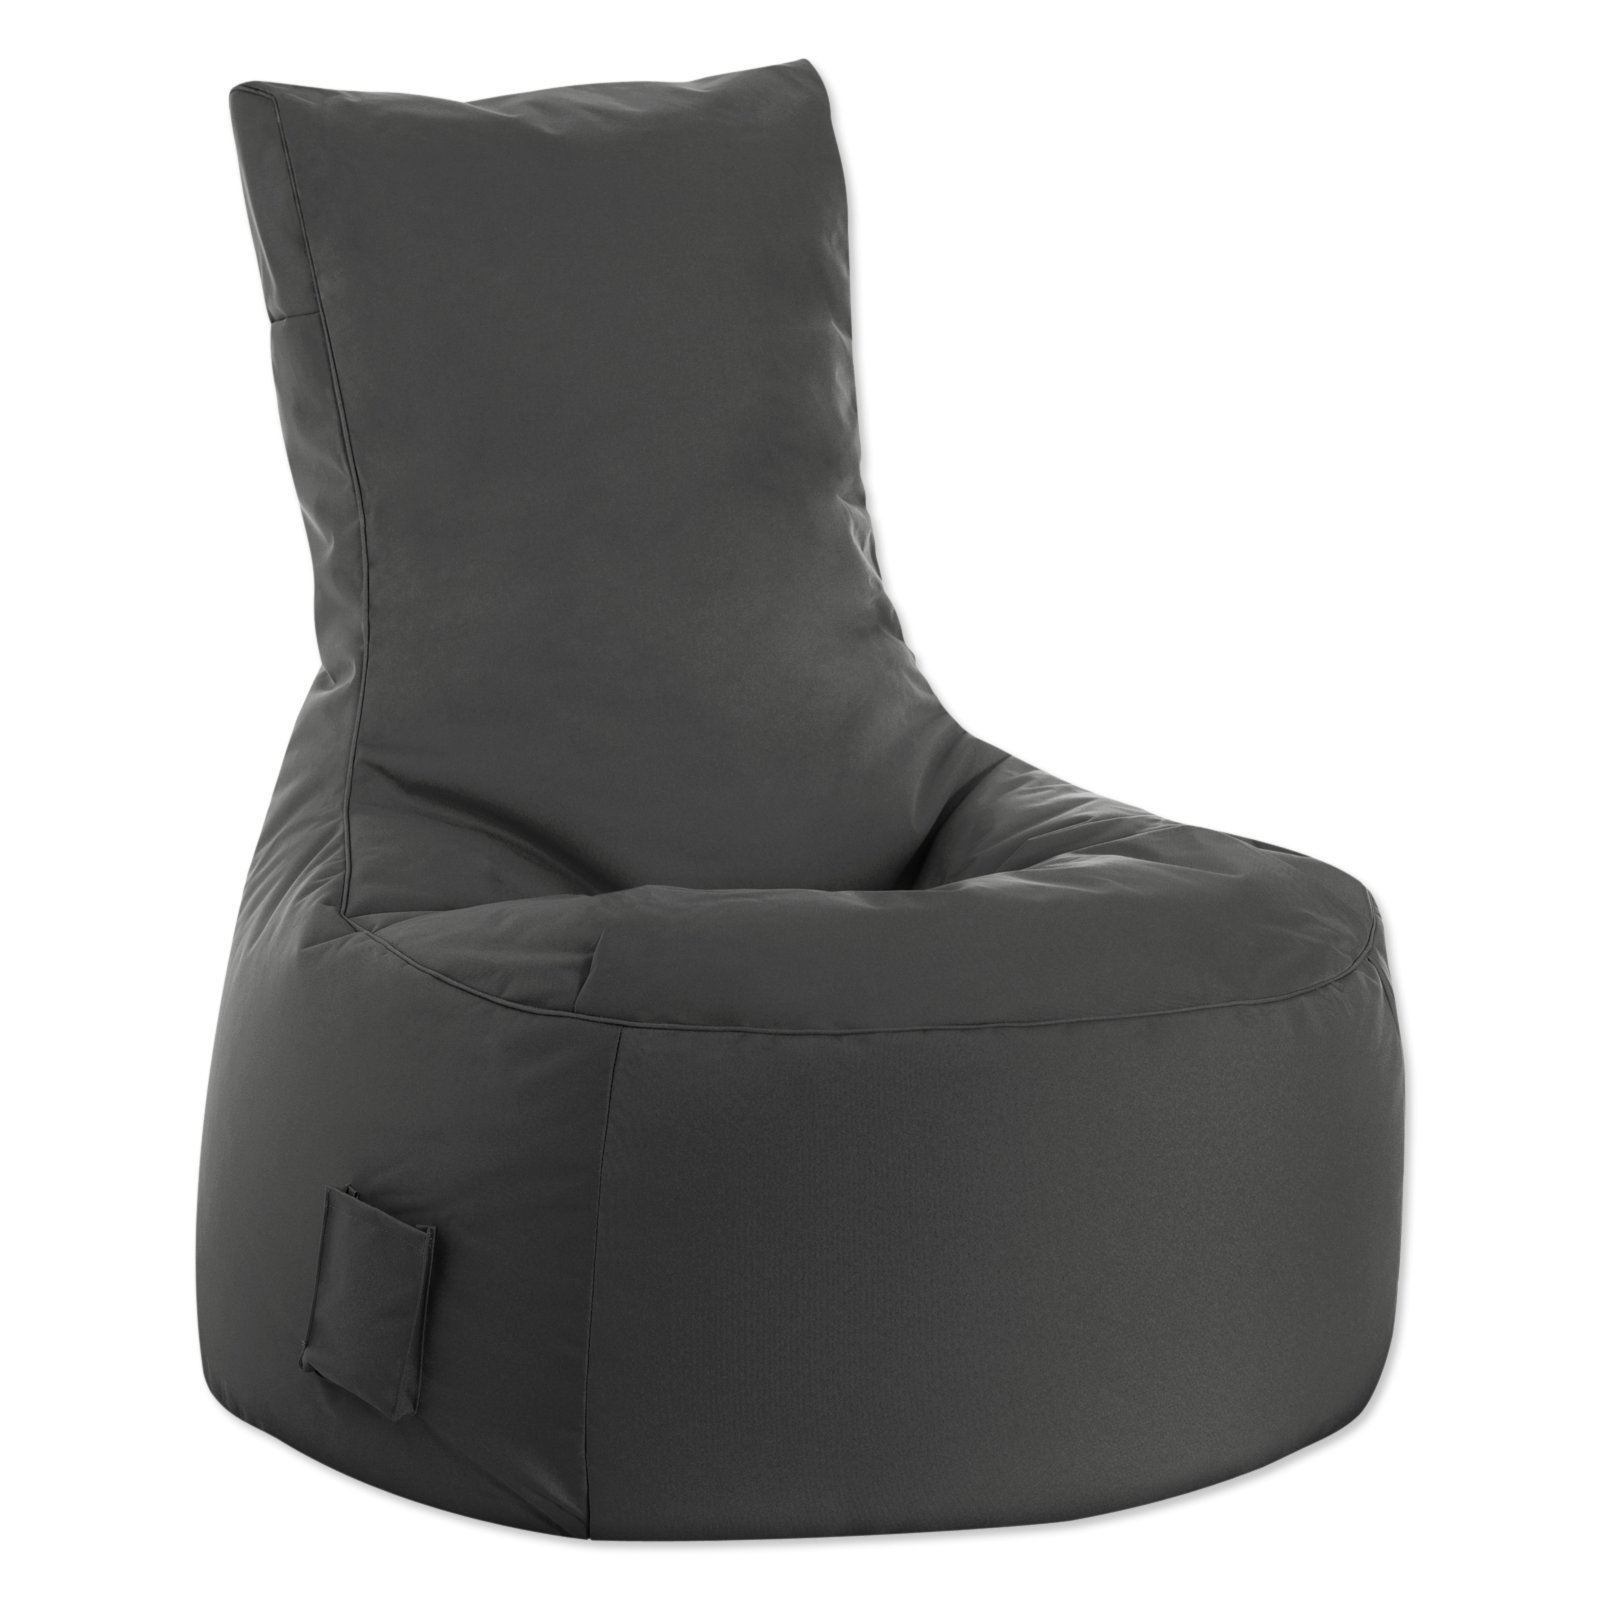 SITTING POINT - Sitzsack BRAVA SWING - anthrazit | Online bei ROLLER kaufen | Sitzsäcke